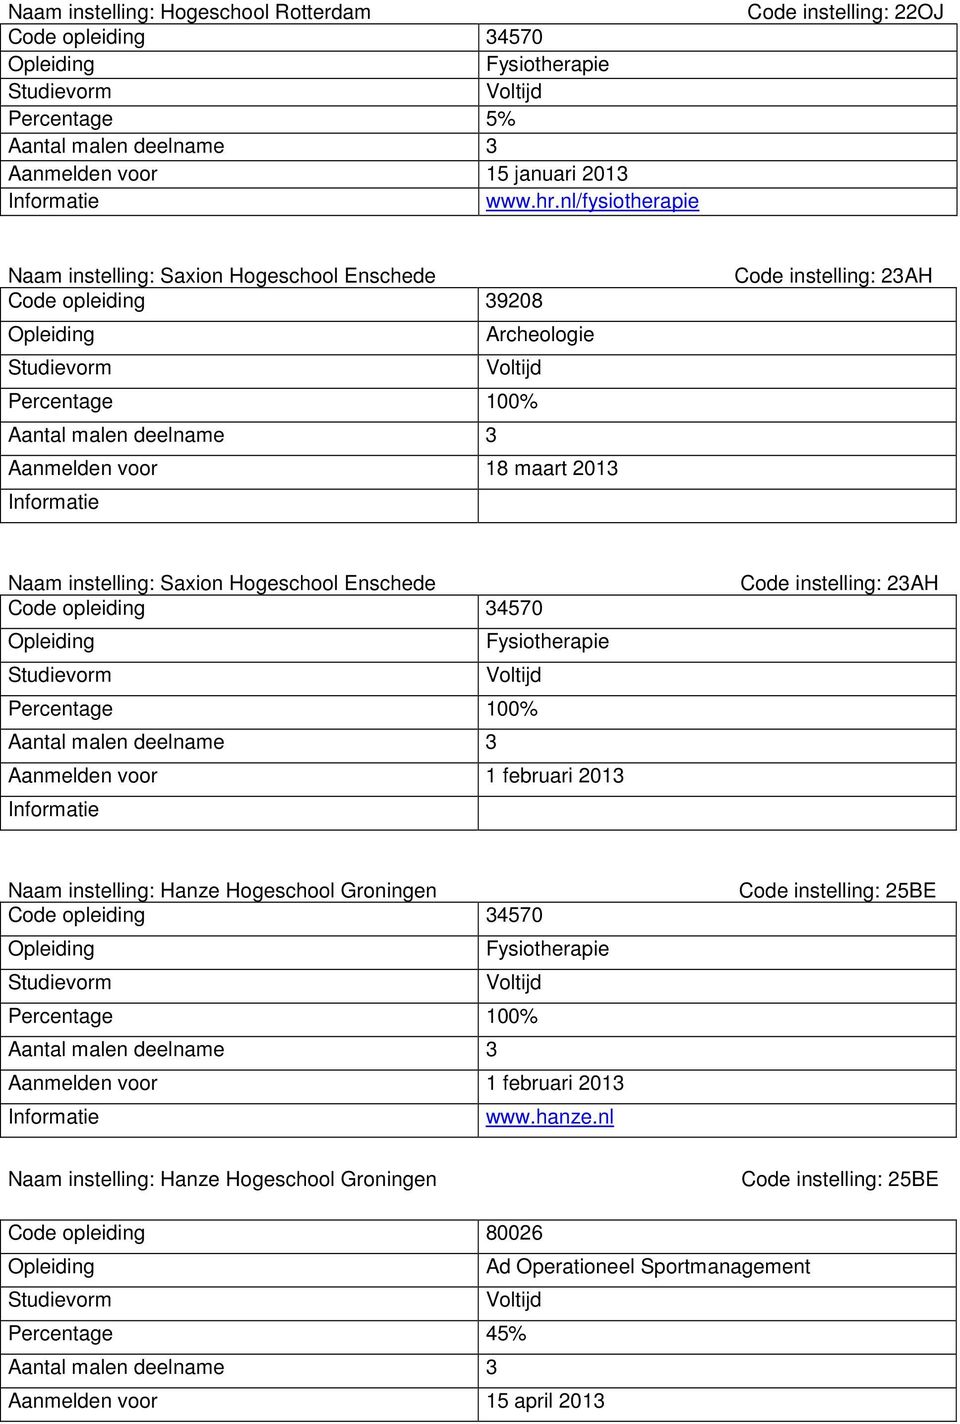 Aanmelden voor 18 maart 2013 Code instelling: 23AH Naam instelling: Saxion Hogeschool Enschede Aanmelden voor 1 februari